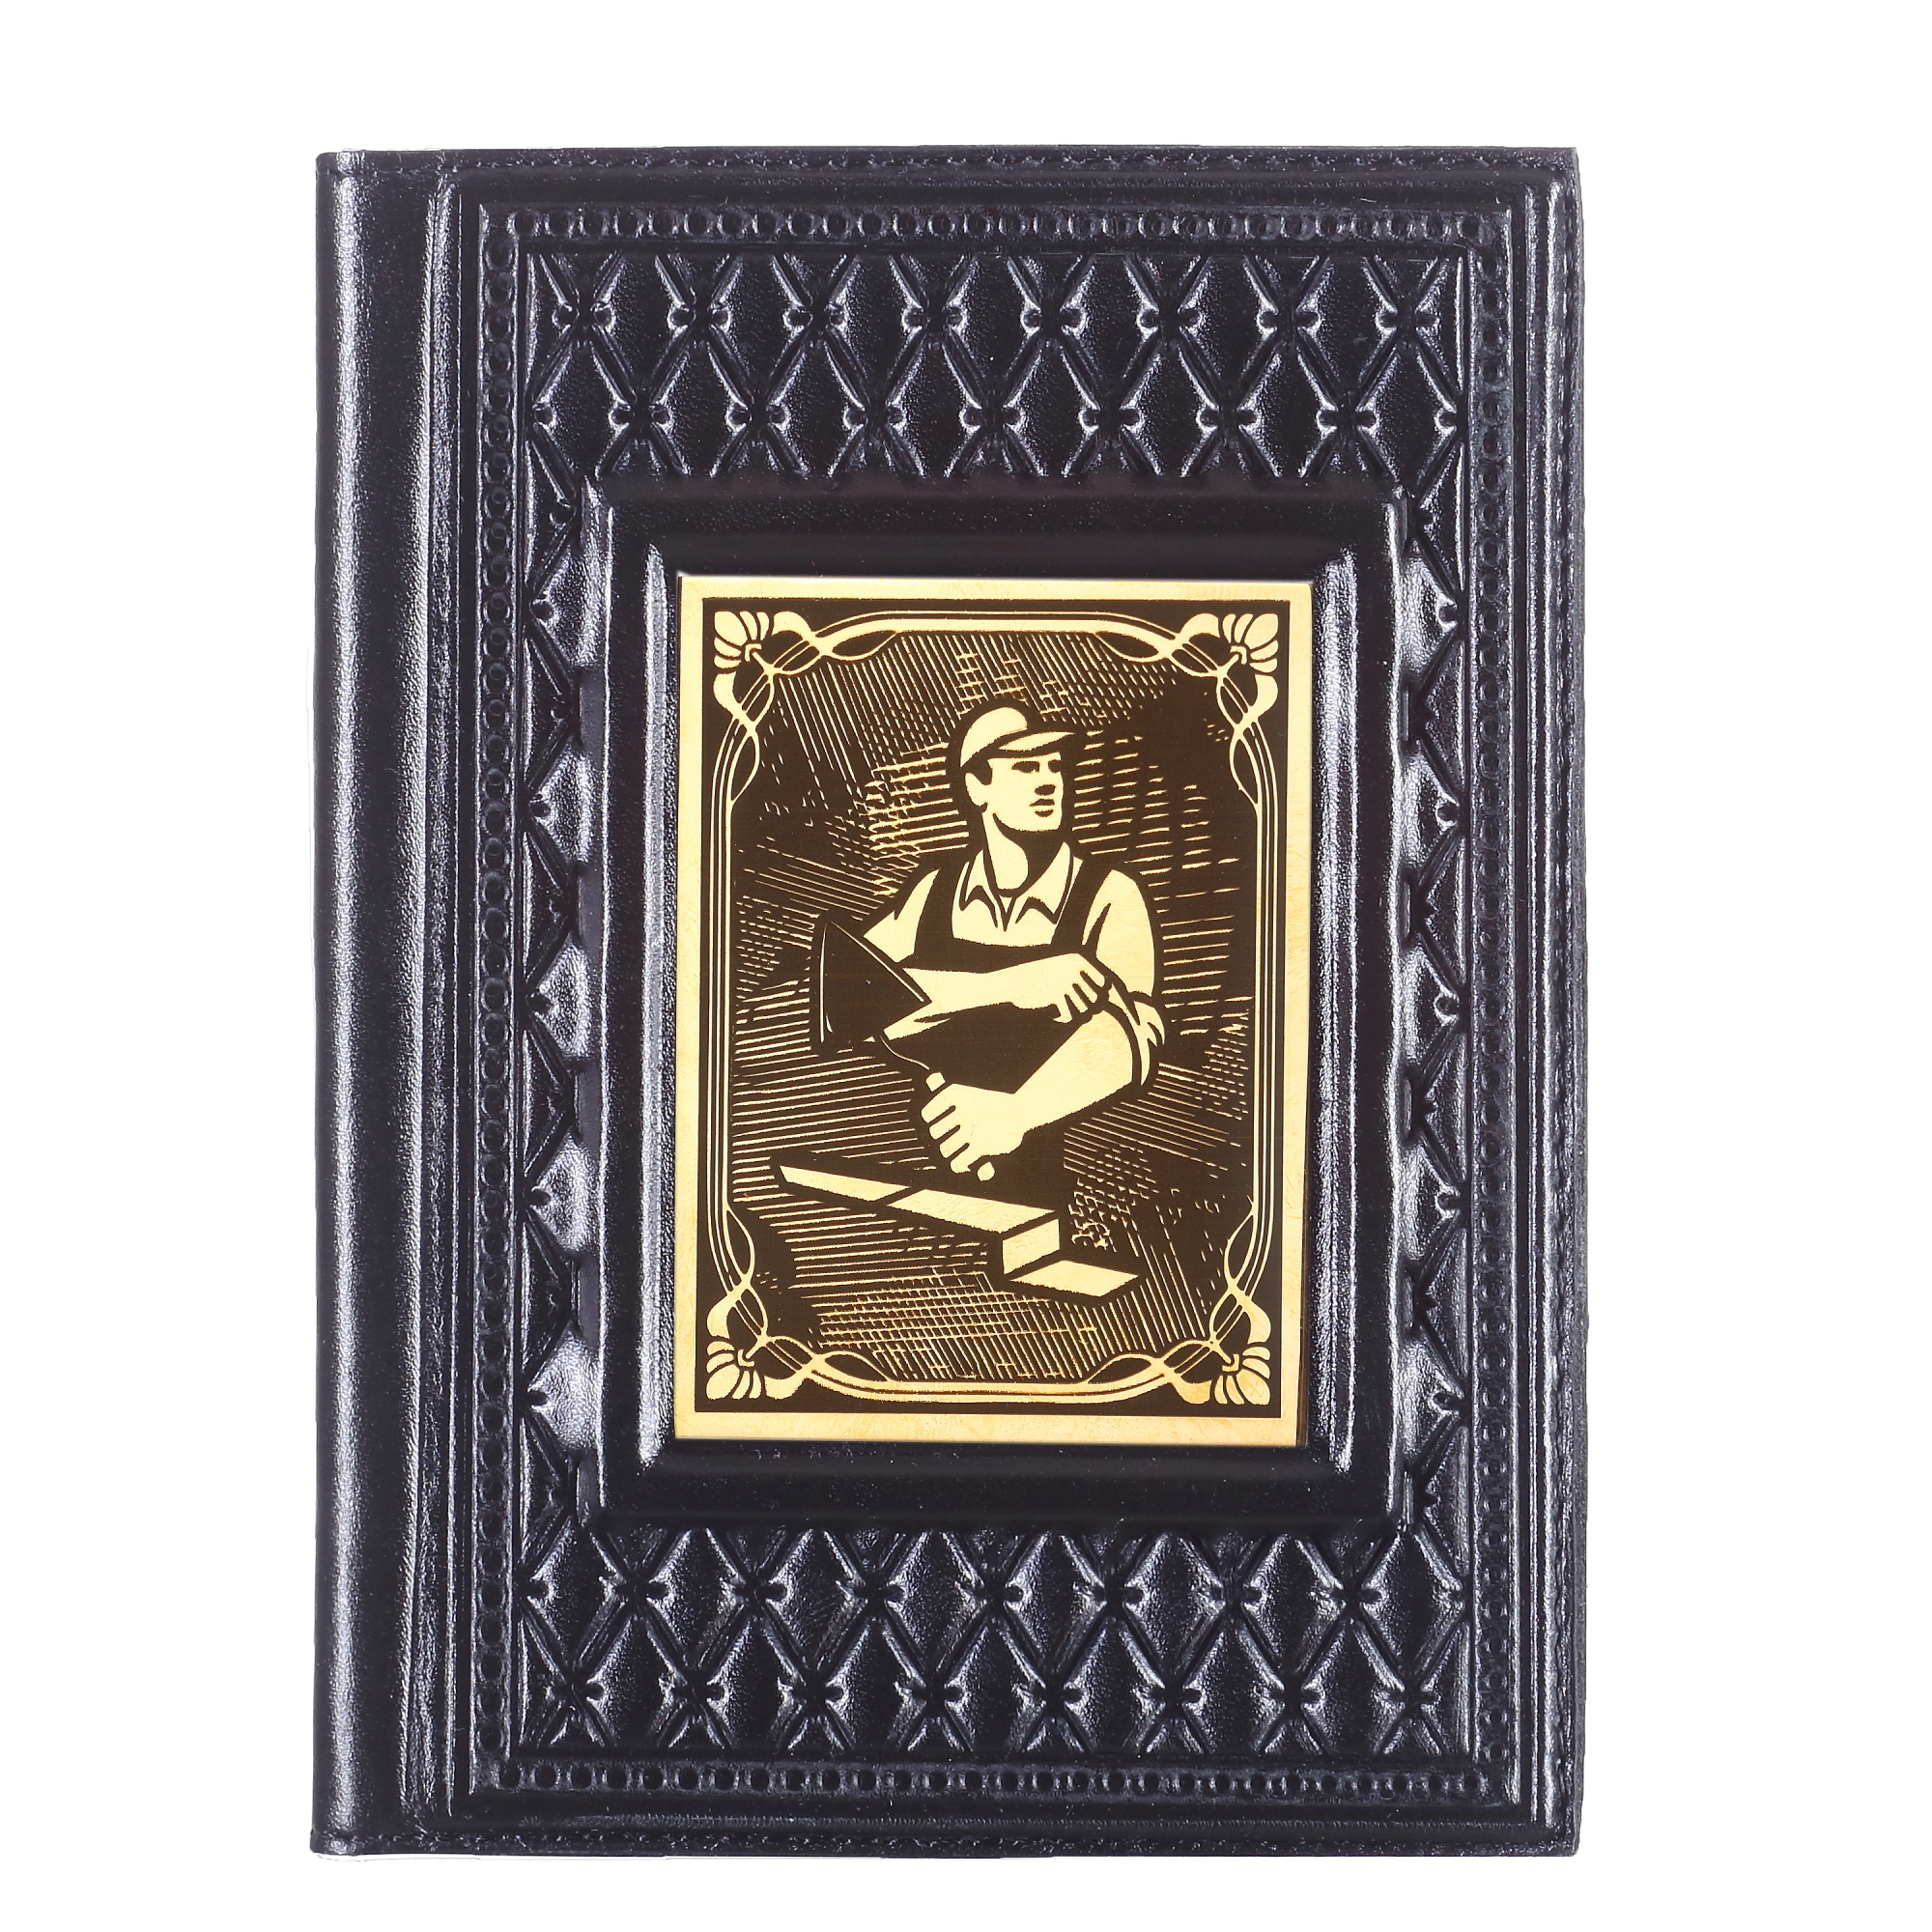 Обложка для паспорта Строителю-2 с накладкой покрытой золотом 999 пробы 009-14-62-8